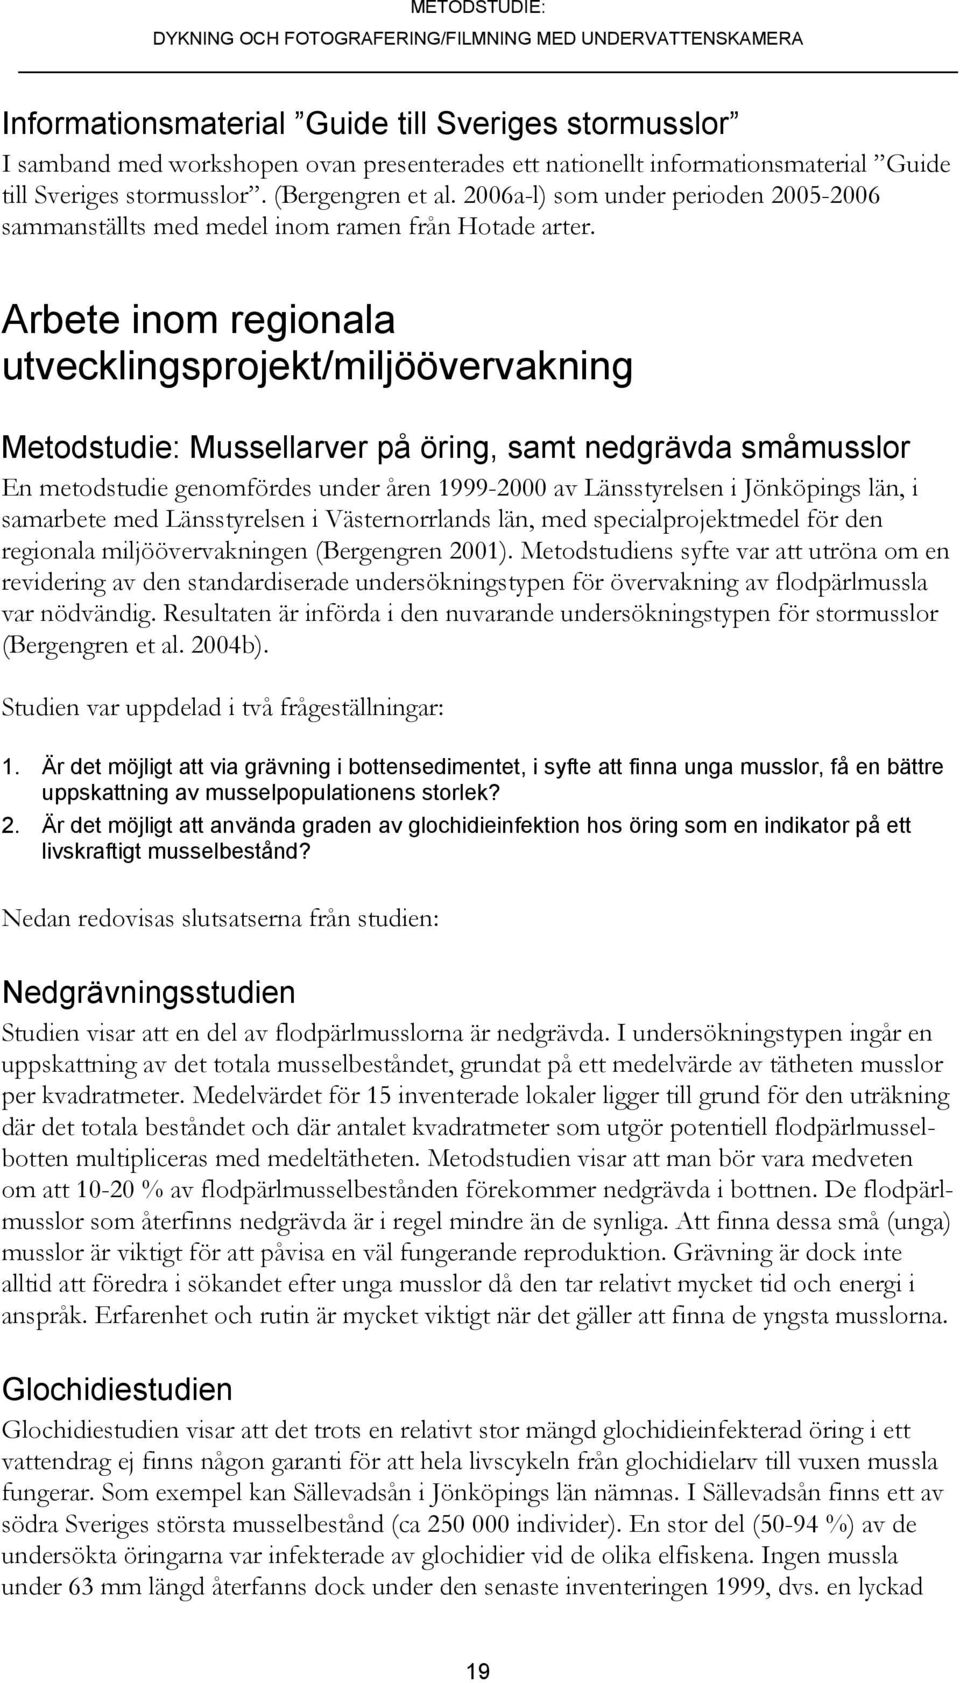 Arbete inom regionala utvecklingsprojekt/miljöövervakning Metodstudie: Mussellarver på öring, samt nedgrävda småmusslor En metodstudie genomfördes under åren 1999-2000 av Länsstyrelsen i Jönköpings